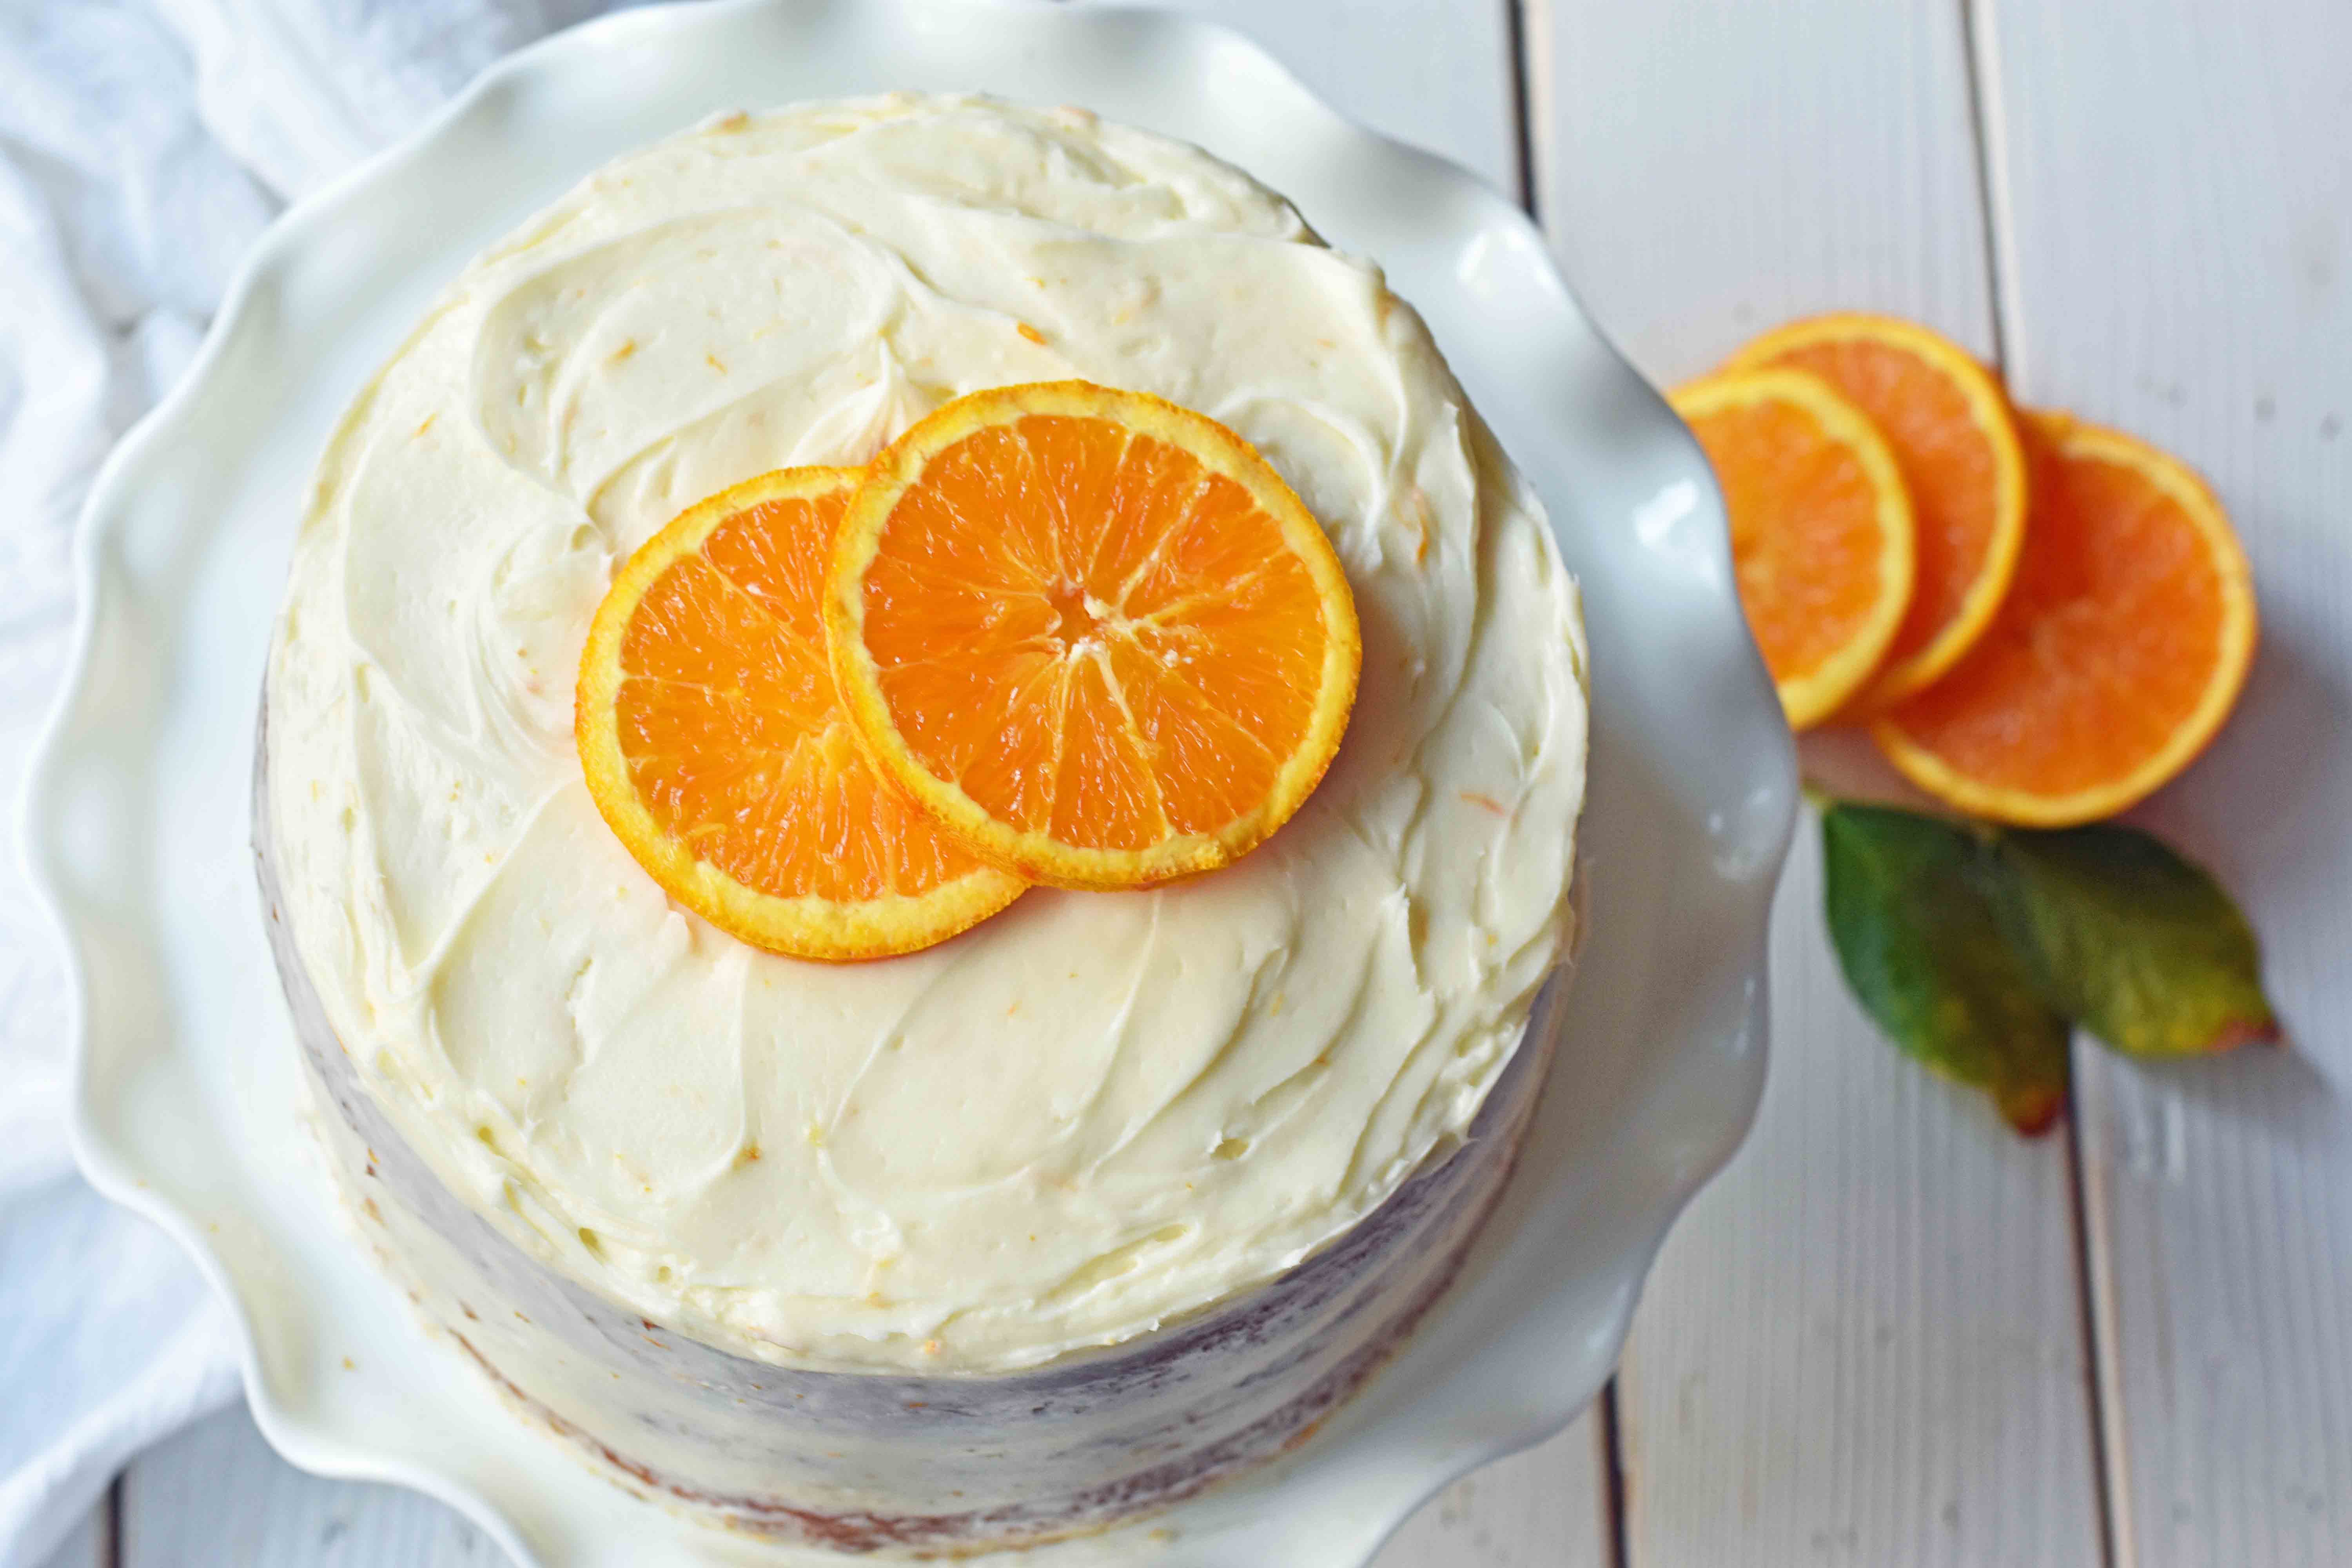 Homemade Orange Cake with Sweet Orange Cream Cheese Frosting. How to make the best orange cake. Orange cake with orange frosting. Naked orange cake. www.modernhoney.com #cake #orangecake #nakedcake #nakedorangecake